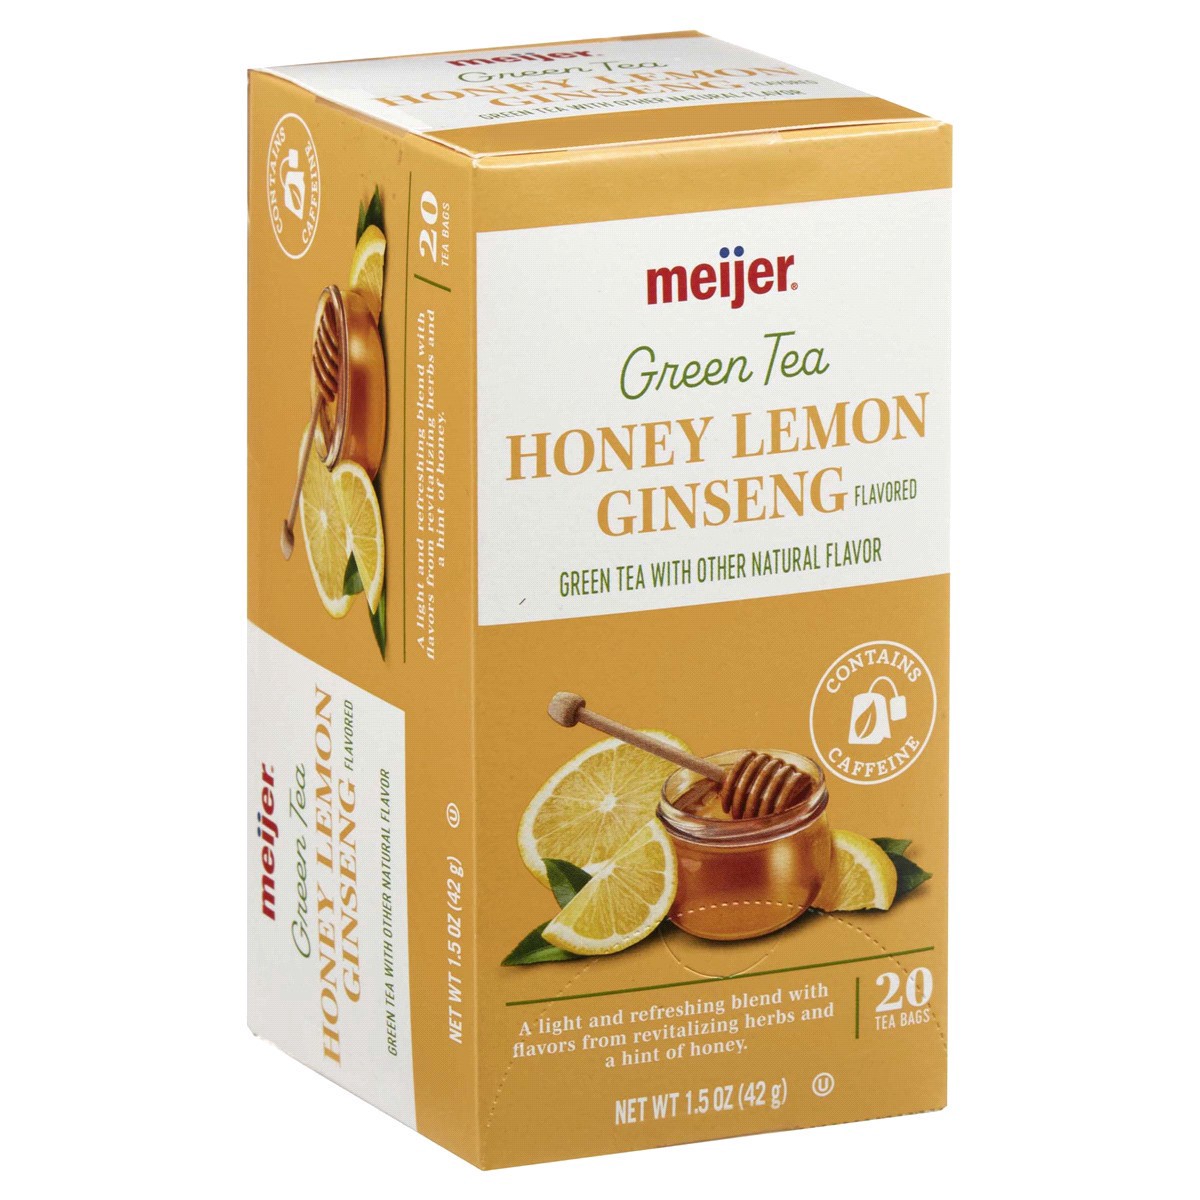 slide 5 of 29, Meijer Honey Lemon Ginseng Green Tea - 20 ct, 20 ct